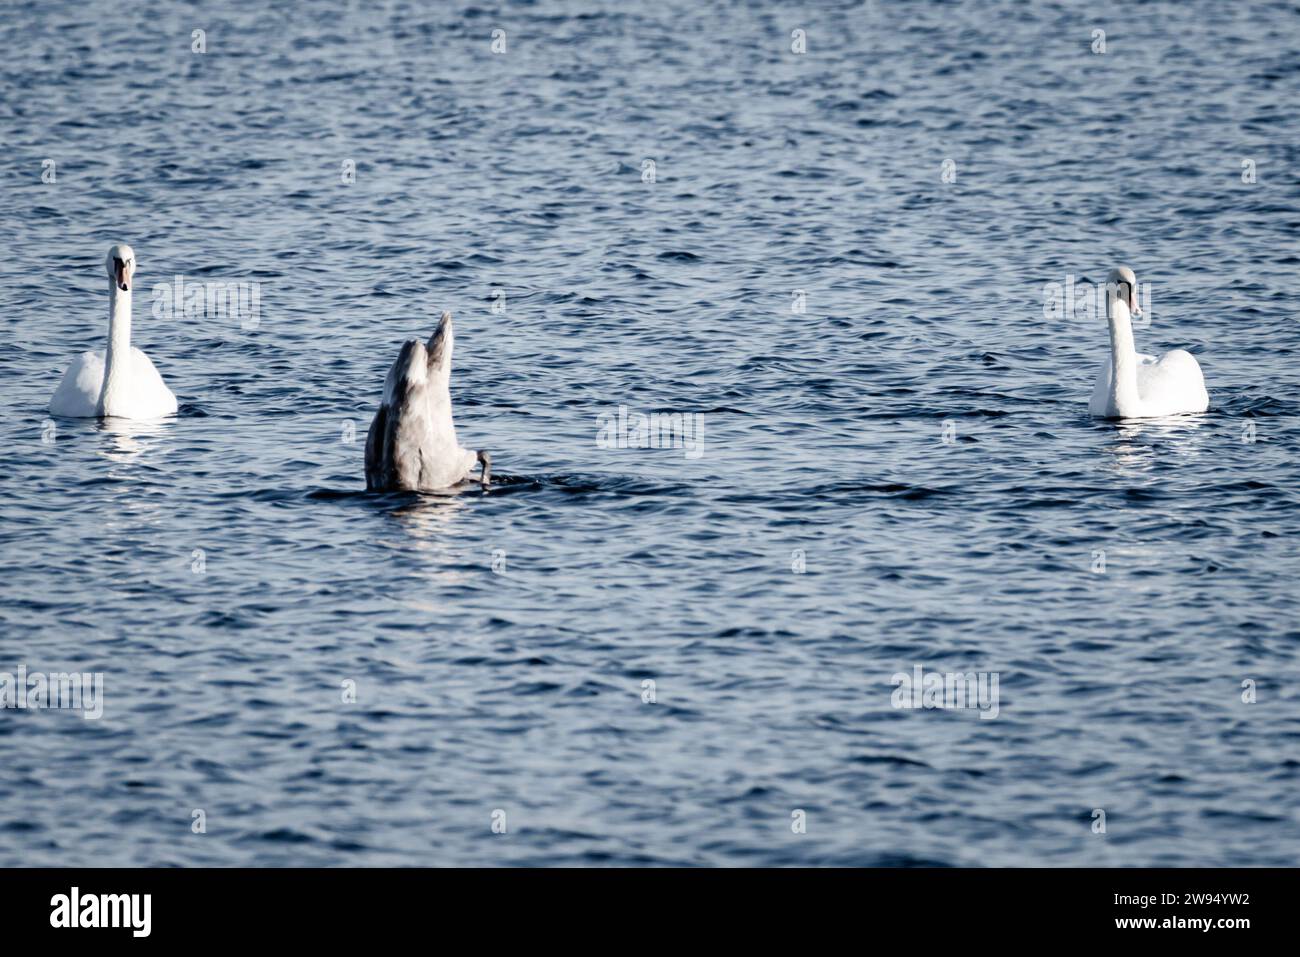 Une famille de cygnes glisse sur l'eau, avec des parents enneigés regardant un cygnet à plumes sombres semi-submerger à la recherche de nourriture. Banque D'Images